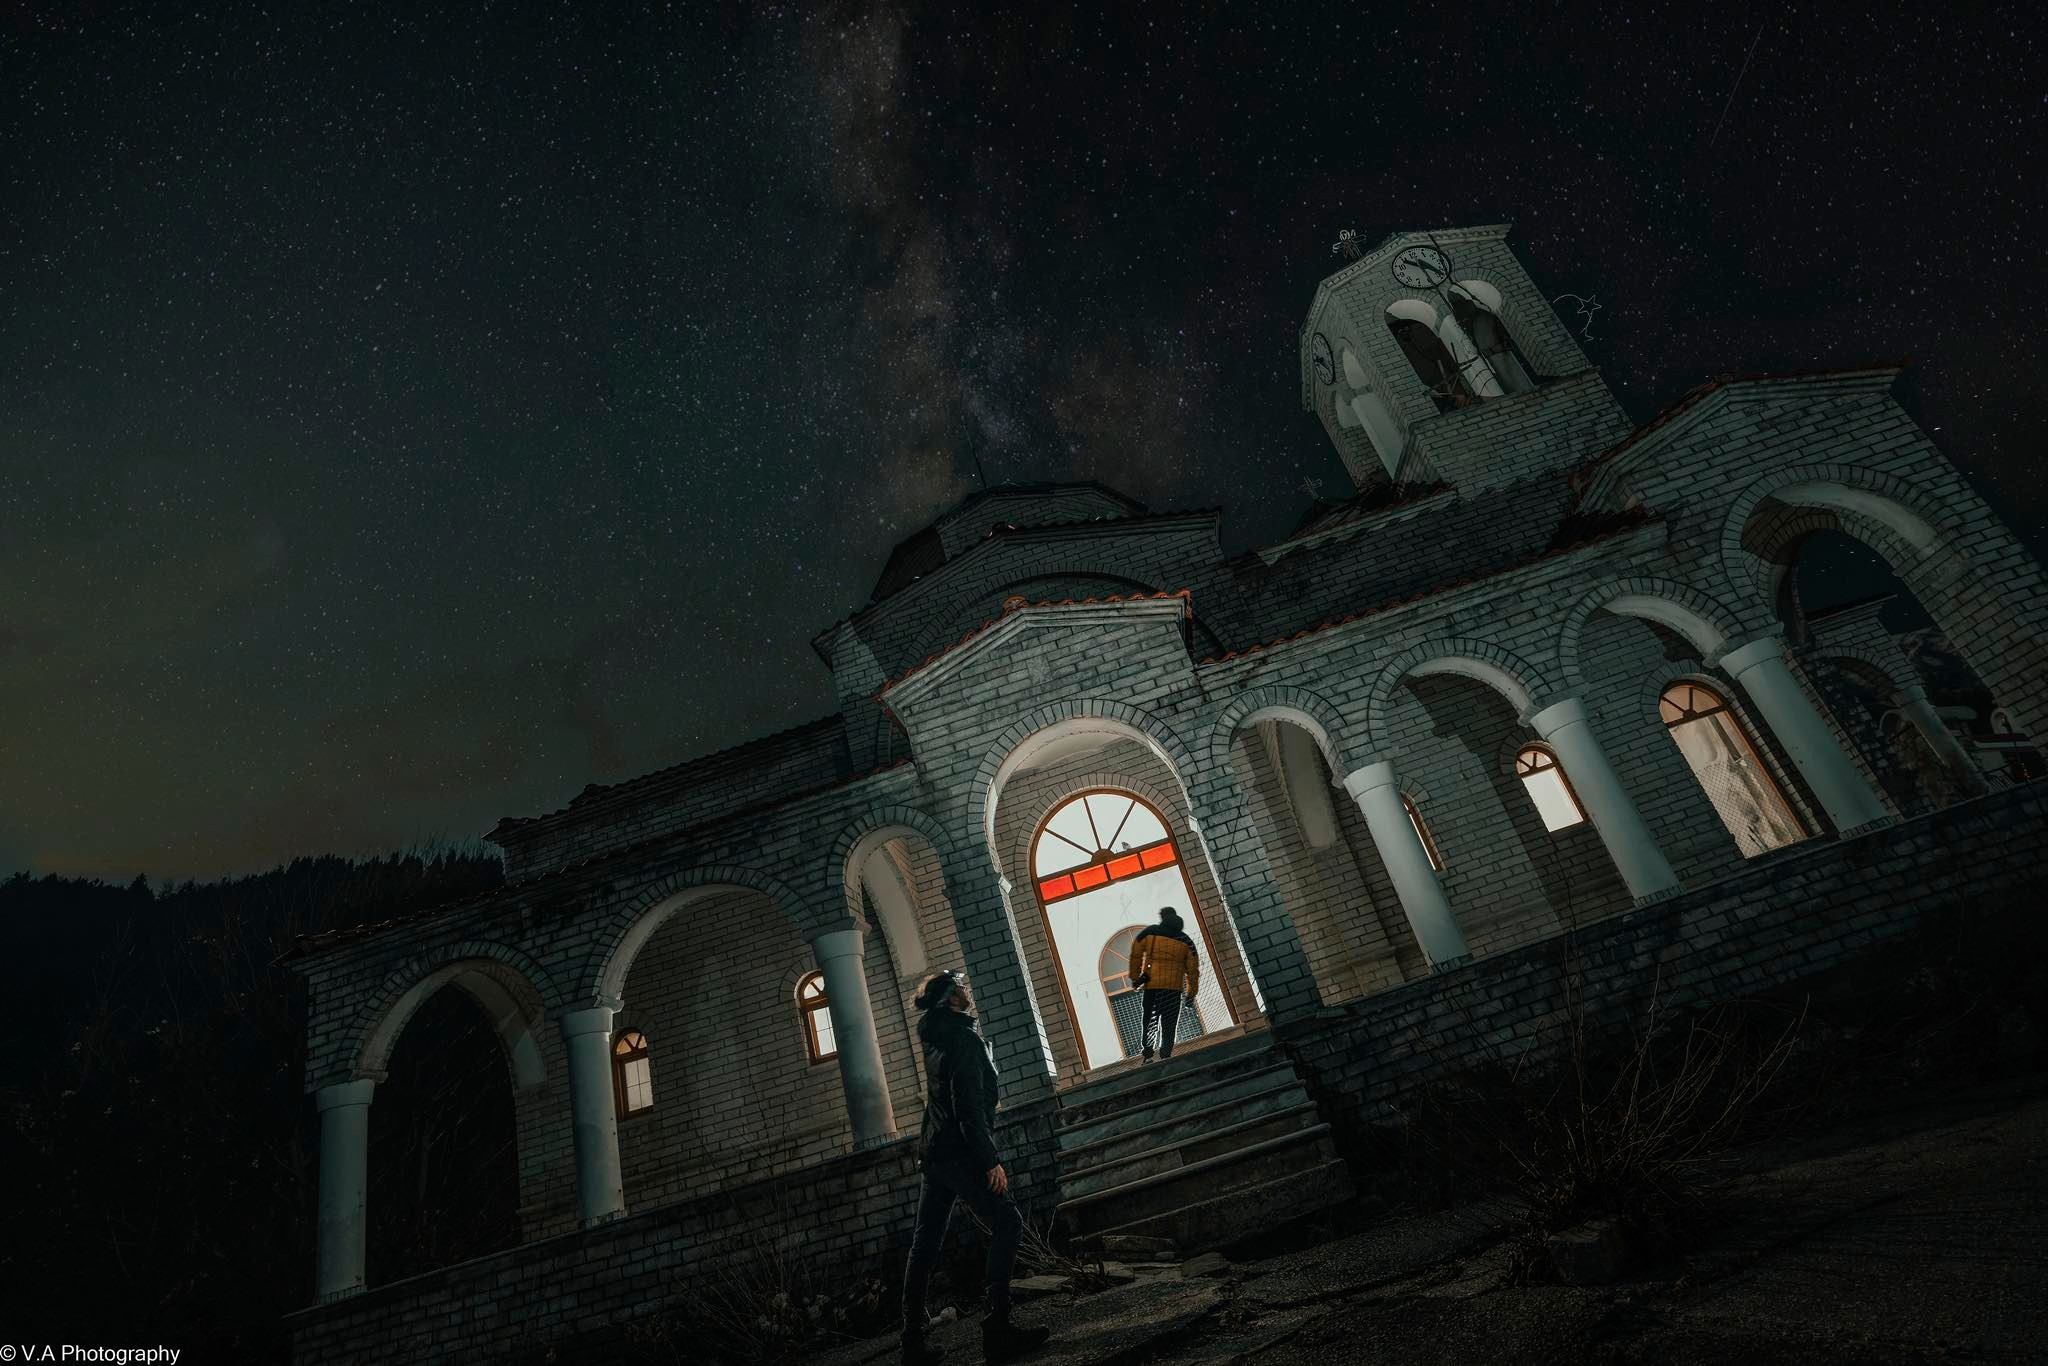 Απίστευτες εικόνες από την εκκλησία του Ροπωτού Τρικάλων που βυθίζεται (Βίντεο)